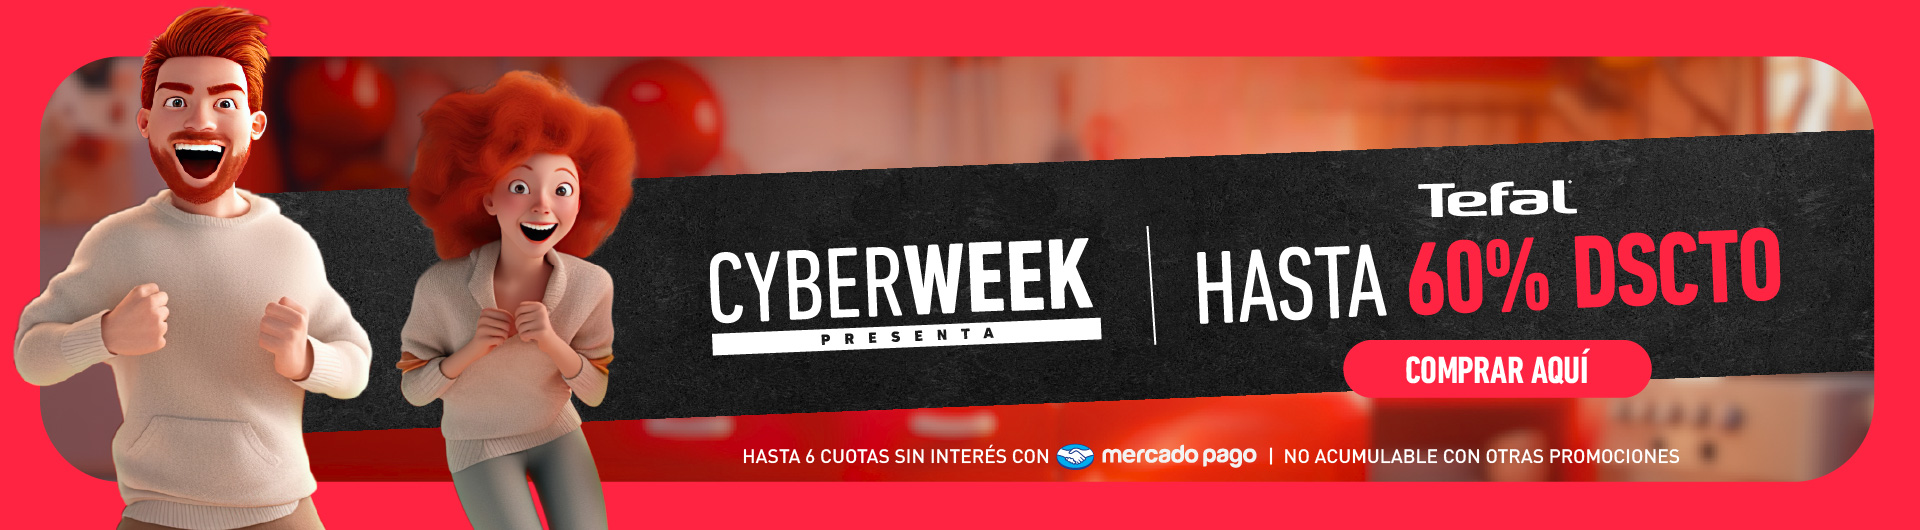 Ofertas Cyber Week Tefal